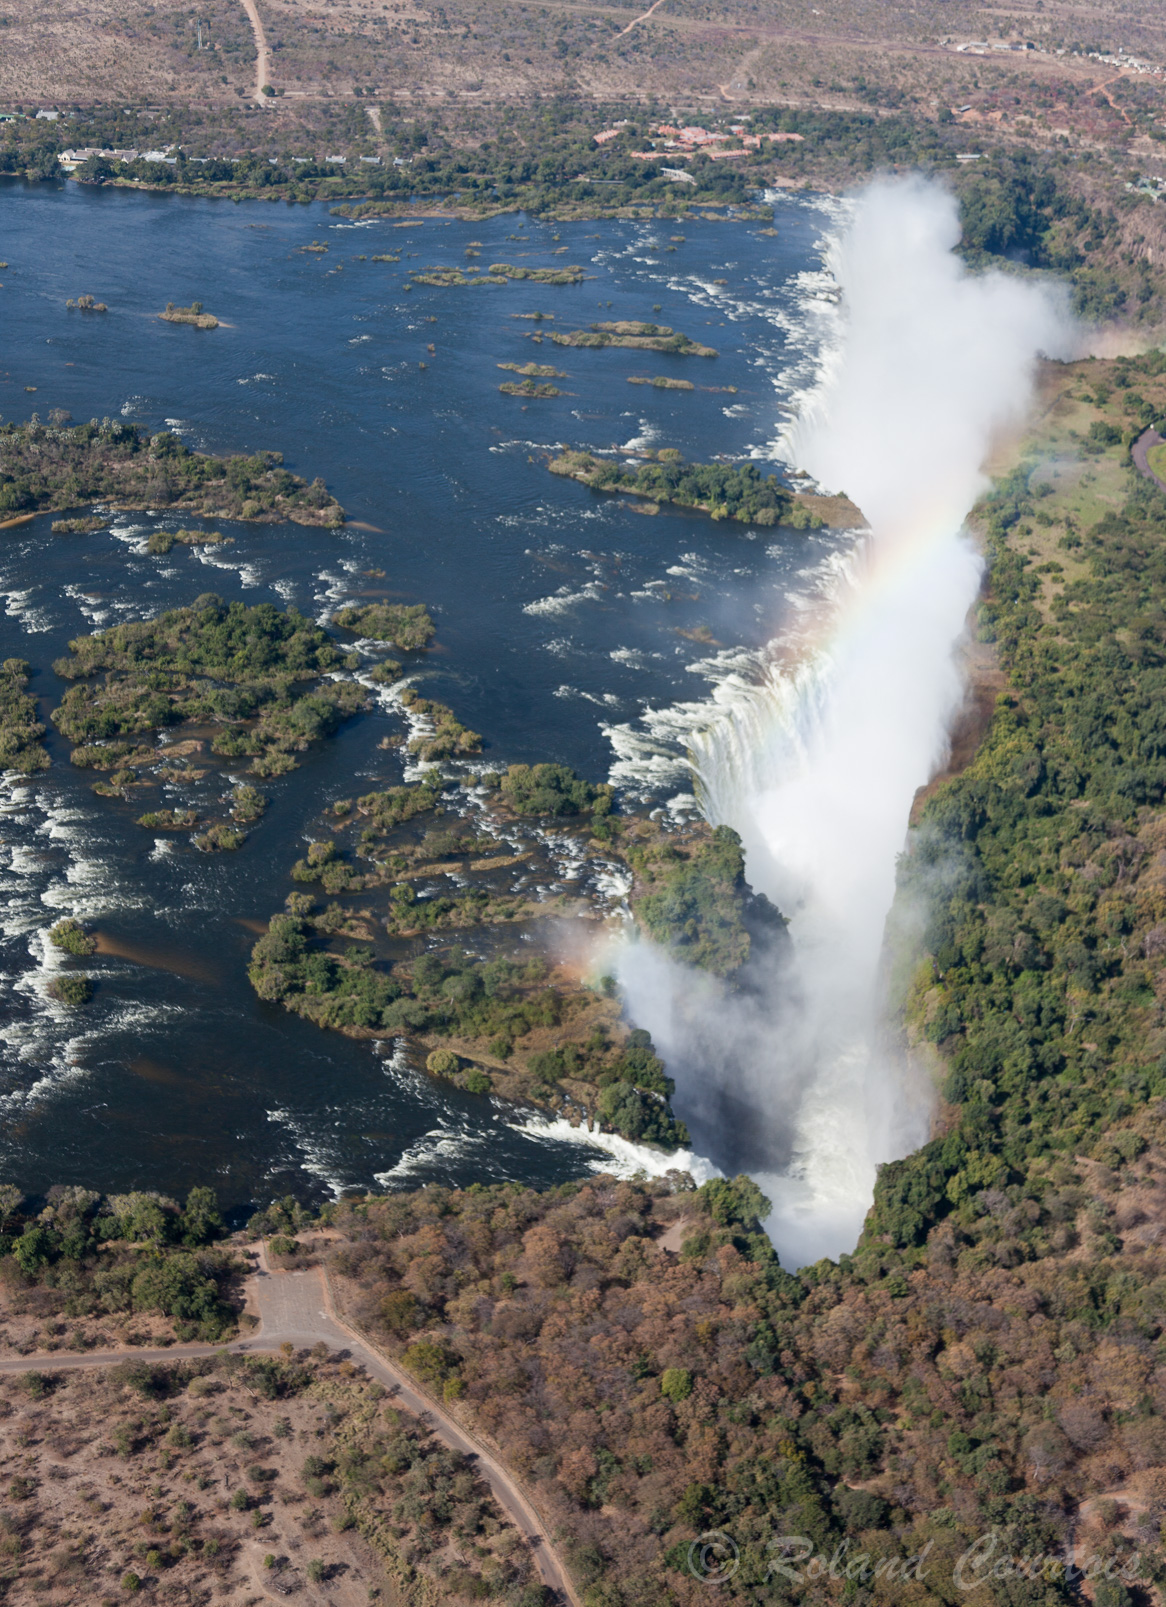 Vue générale des 1,7 km des chutes Victoria, permettant de voir l'ensemble des chutes et des îles. Le Zimbabwe est à droite, et la Zambie à gauche.